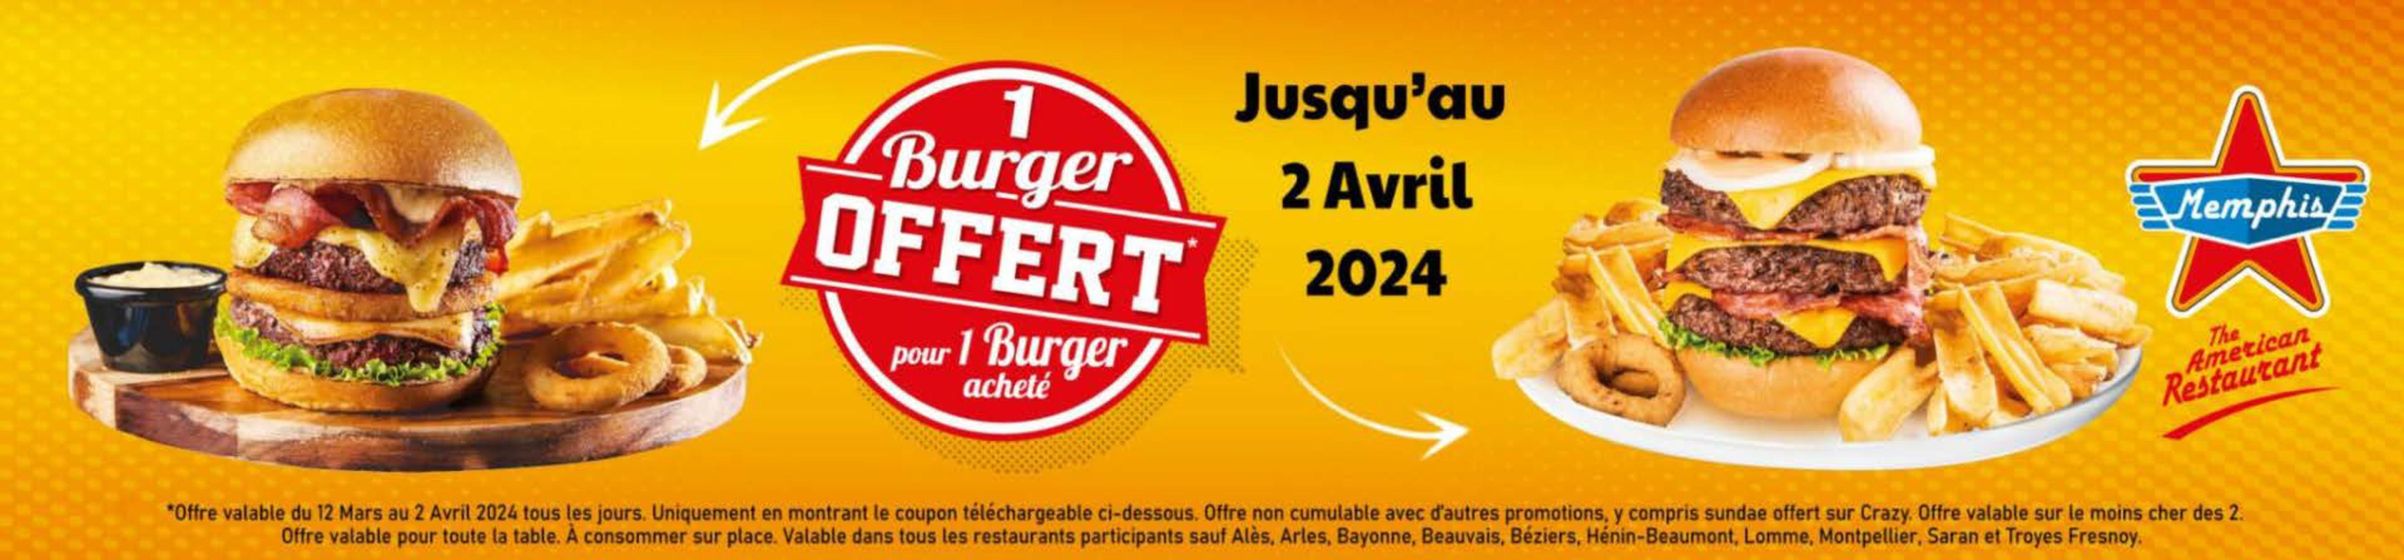 Catalogue Memphis Coffee à Béziers | 1 Burger Offert Pour 1 Burger Acheté | 25/03/2024 - 02/04/2024